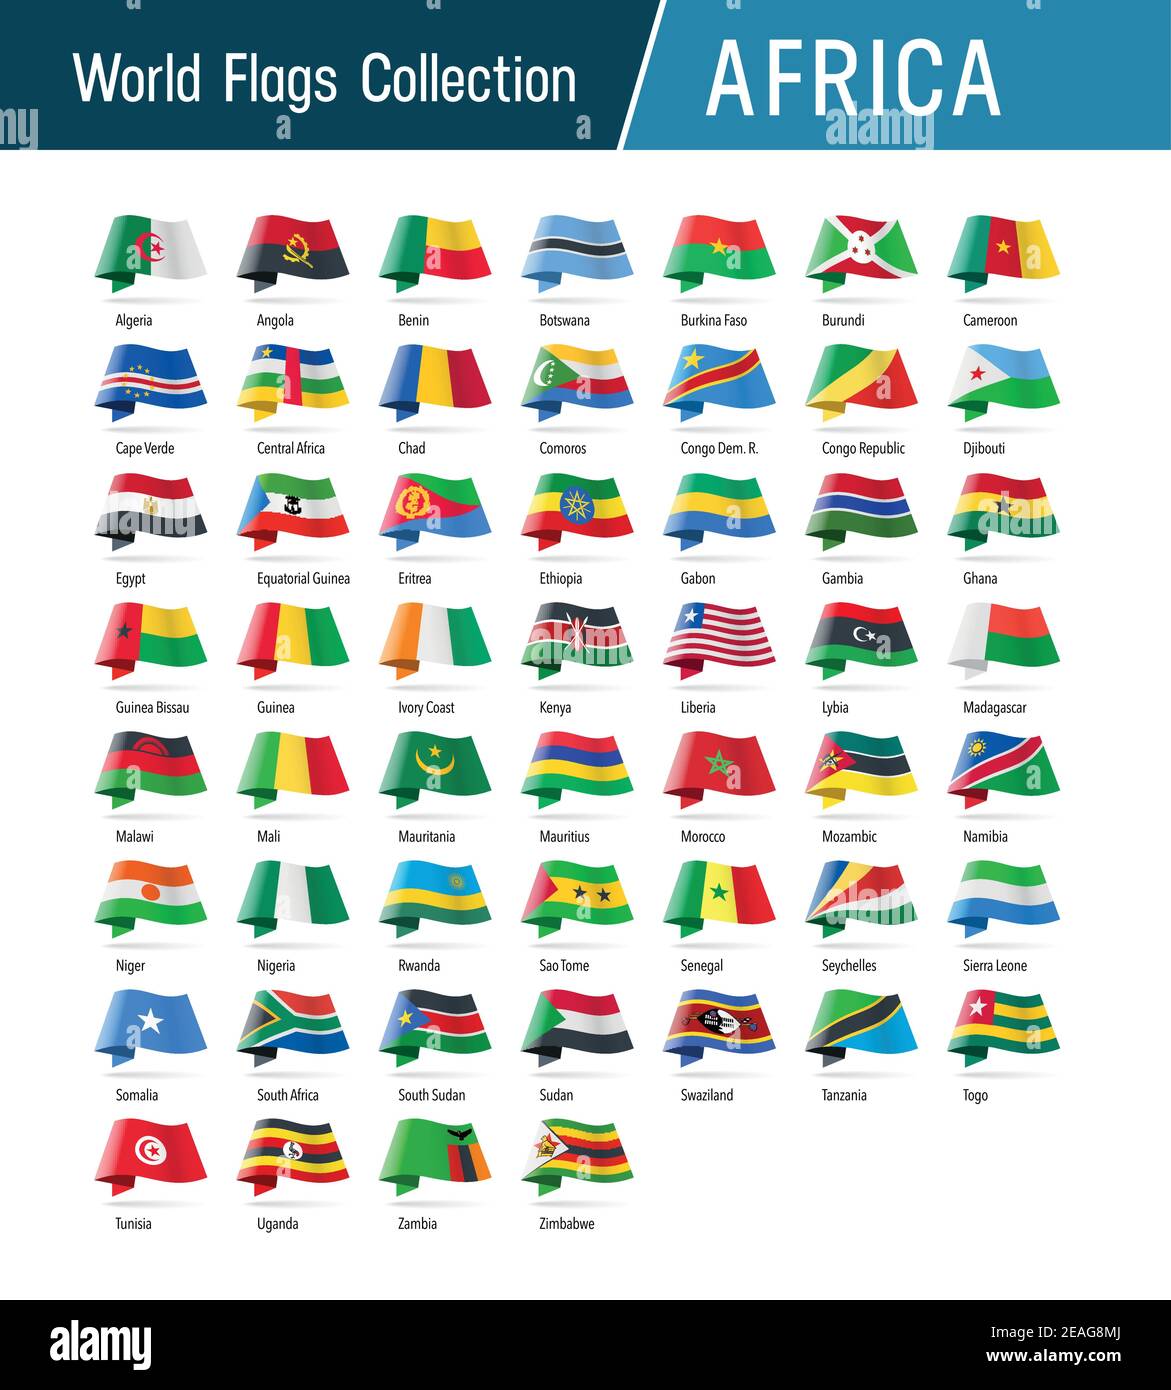 Flaggen von Afrika, winken im Wind. Symbole, die auf Position, Herkunft und Sprache verweisen. Vector Welt Flaggen Kollektion. Stock Vektor